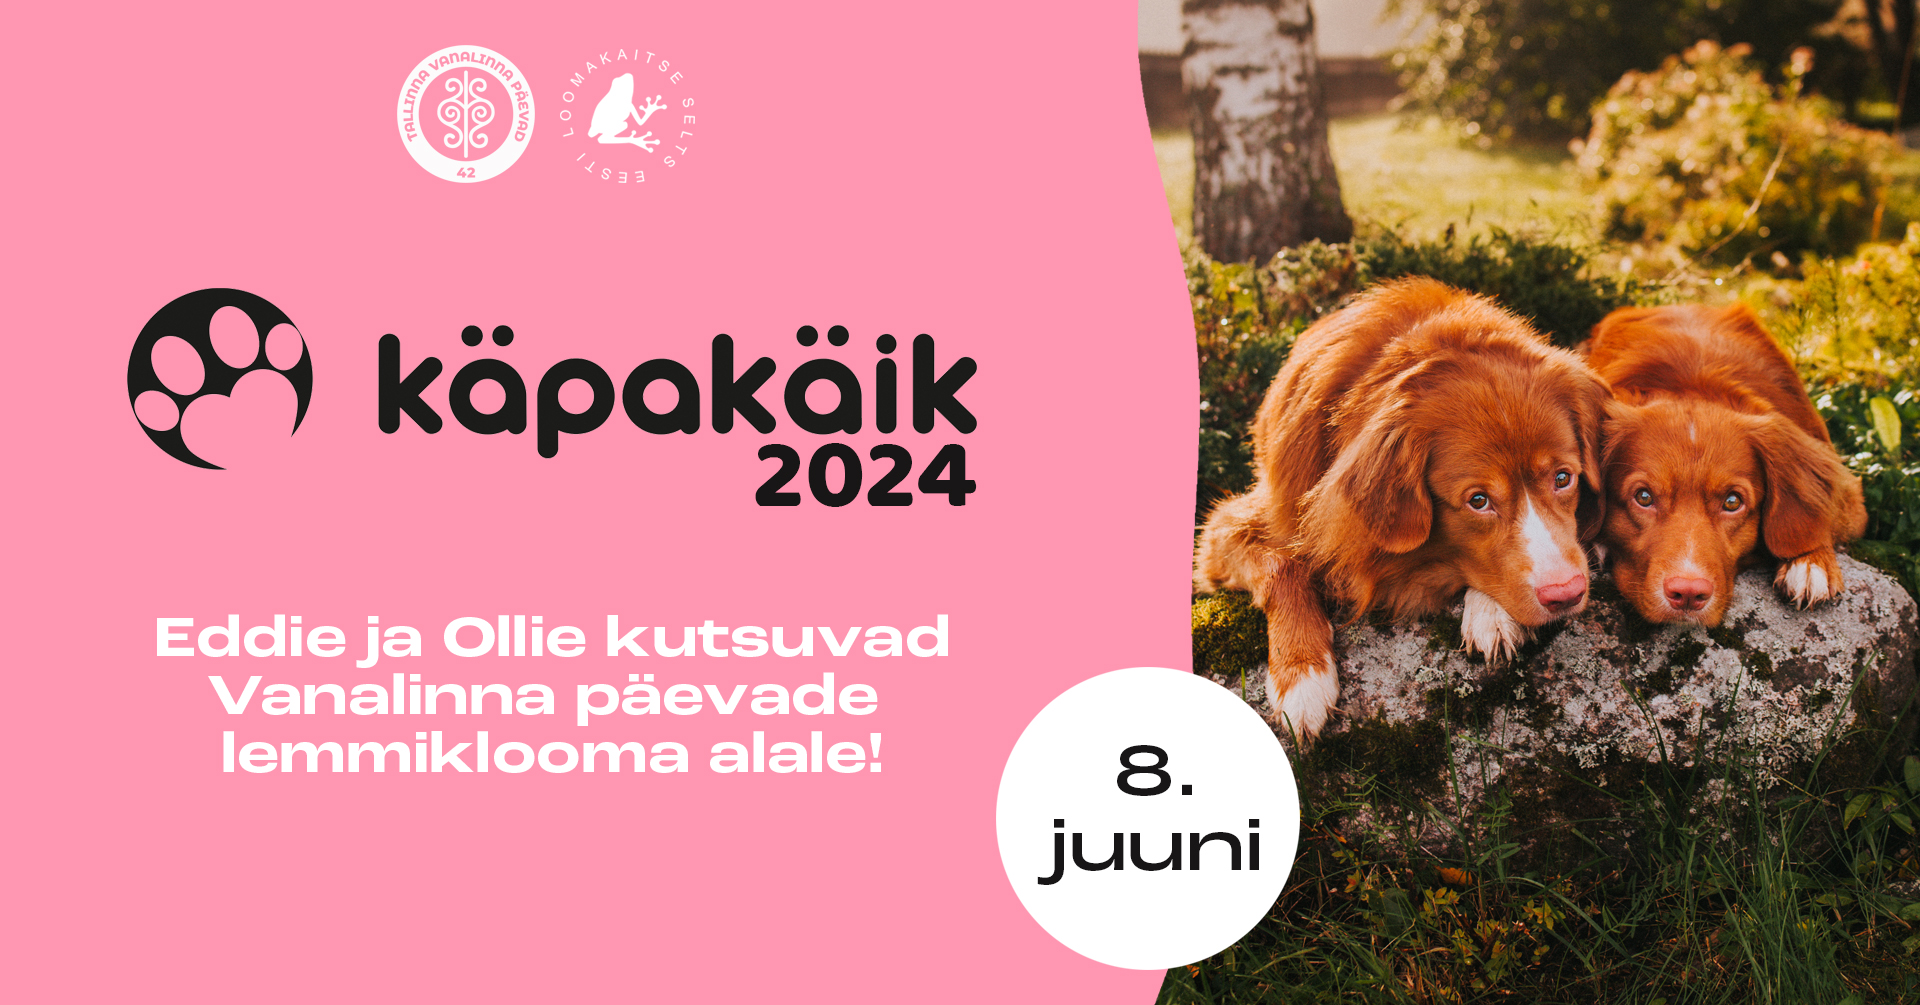 Vanalinna päevade raames toimub taas heategevuslik rongkäik Käpakäik. 8. juunil ootab Eesti Loomakaitse Selts (ELS) kõiki loomasõpru Šnelli tiigi äärde lemmiklo